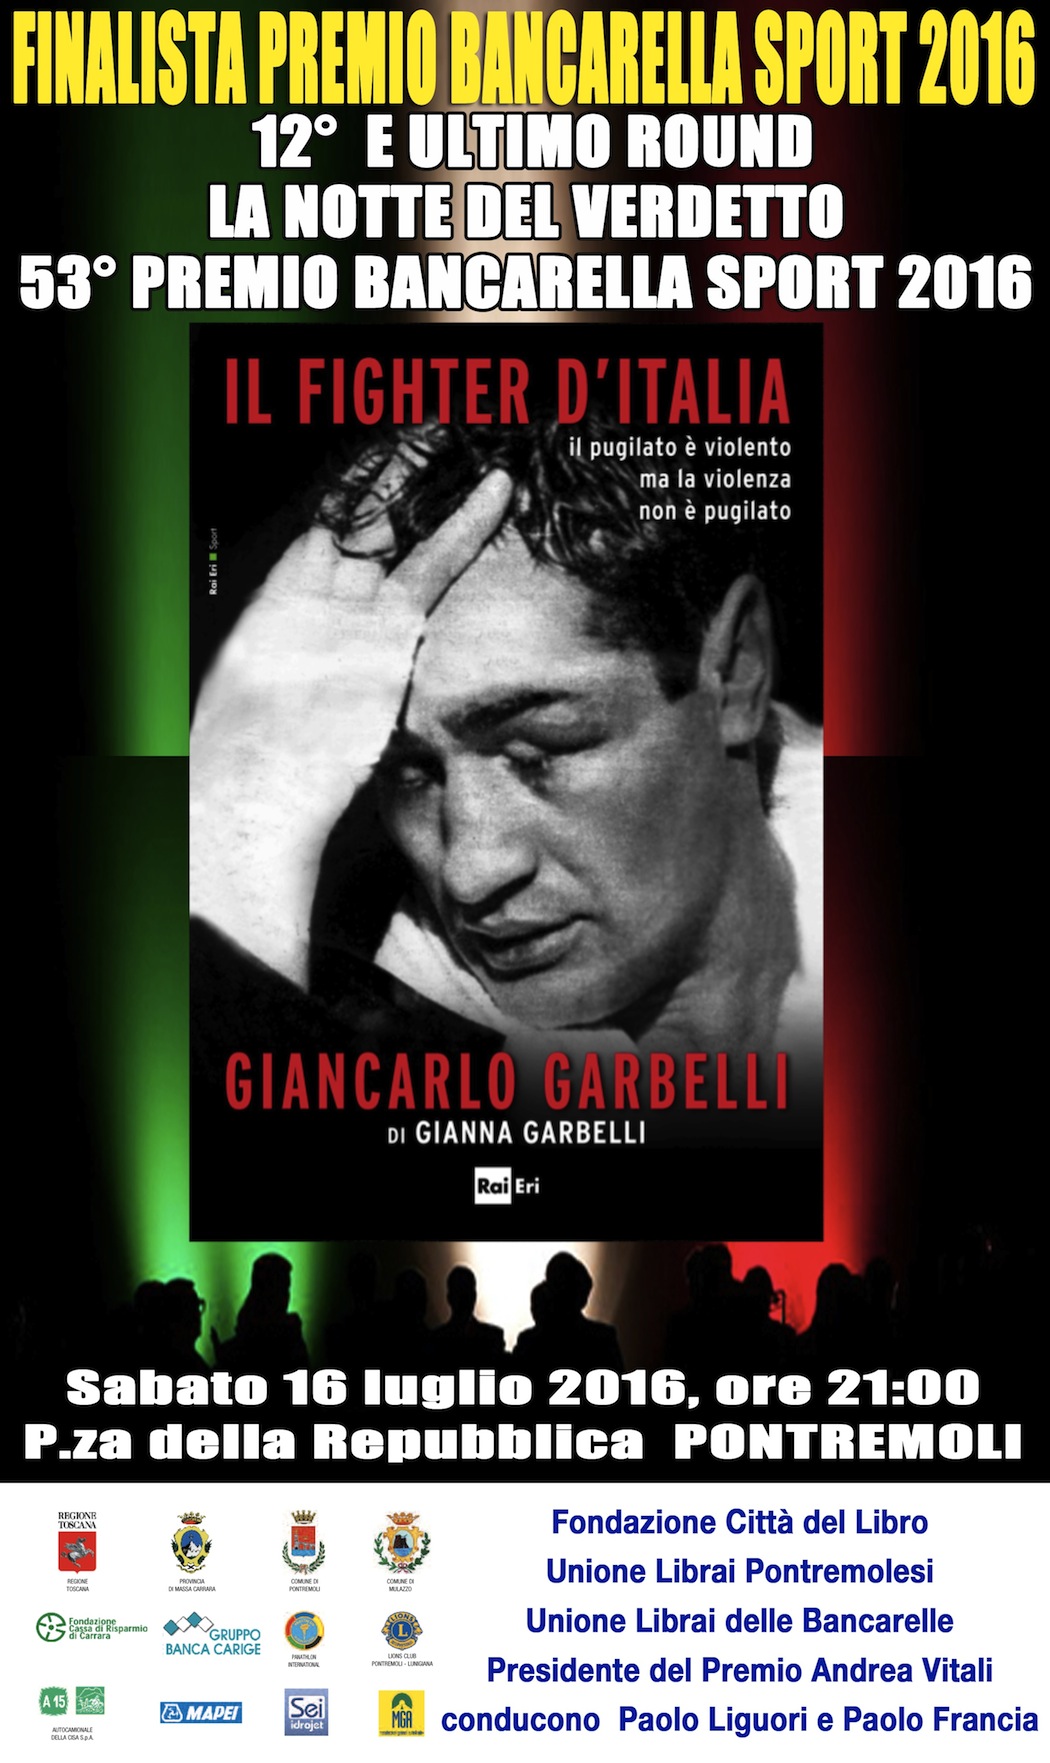 invito cerimonia Pontremoli IL FIGHTER D'ITALIA GIANCARLO GARBELLI loww